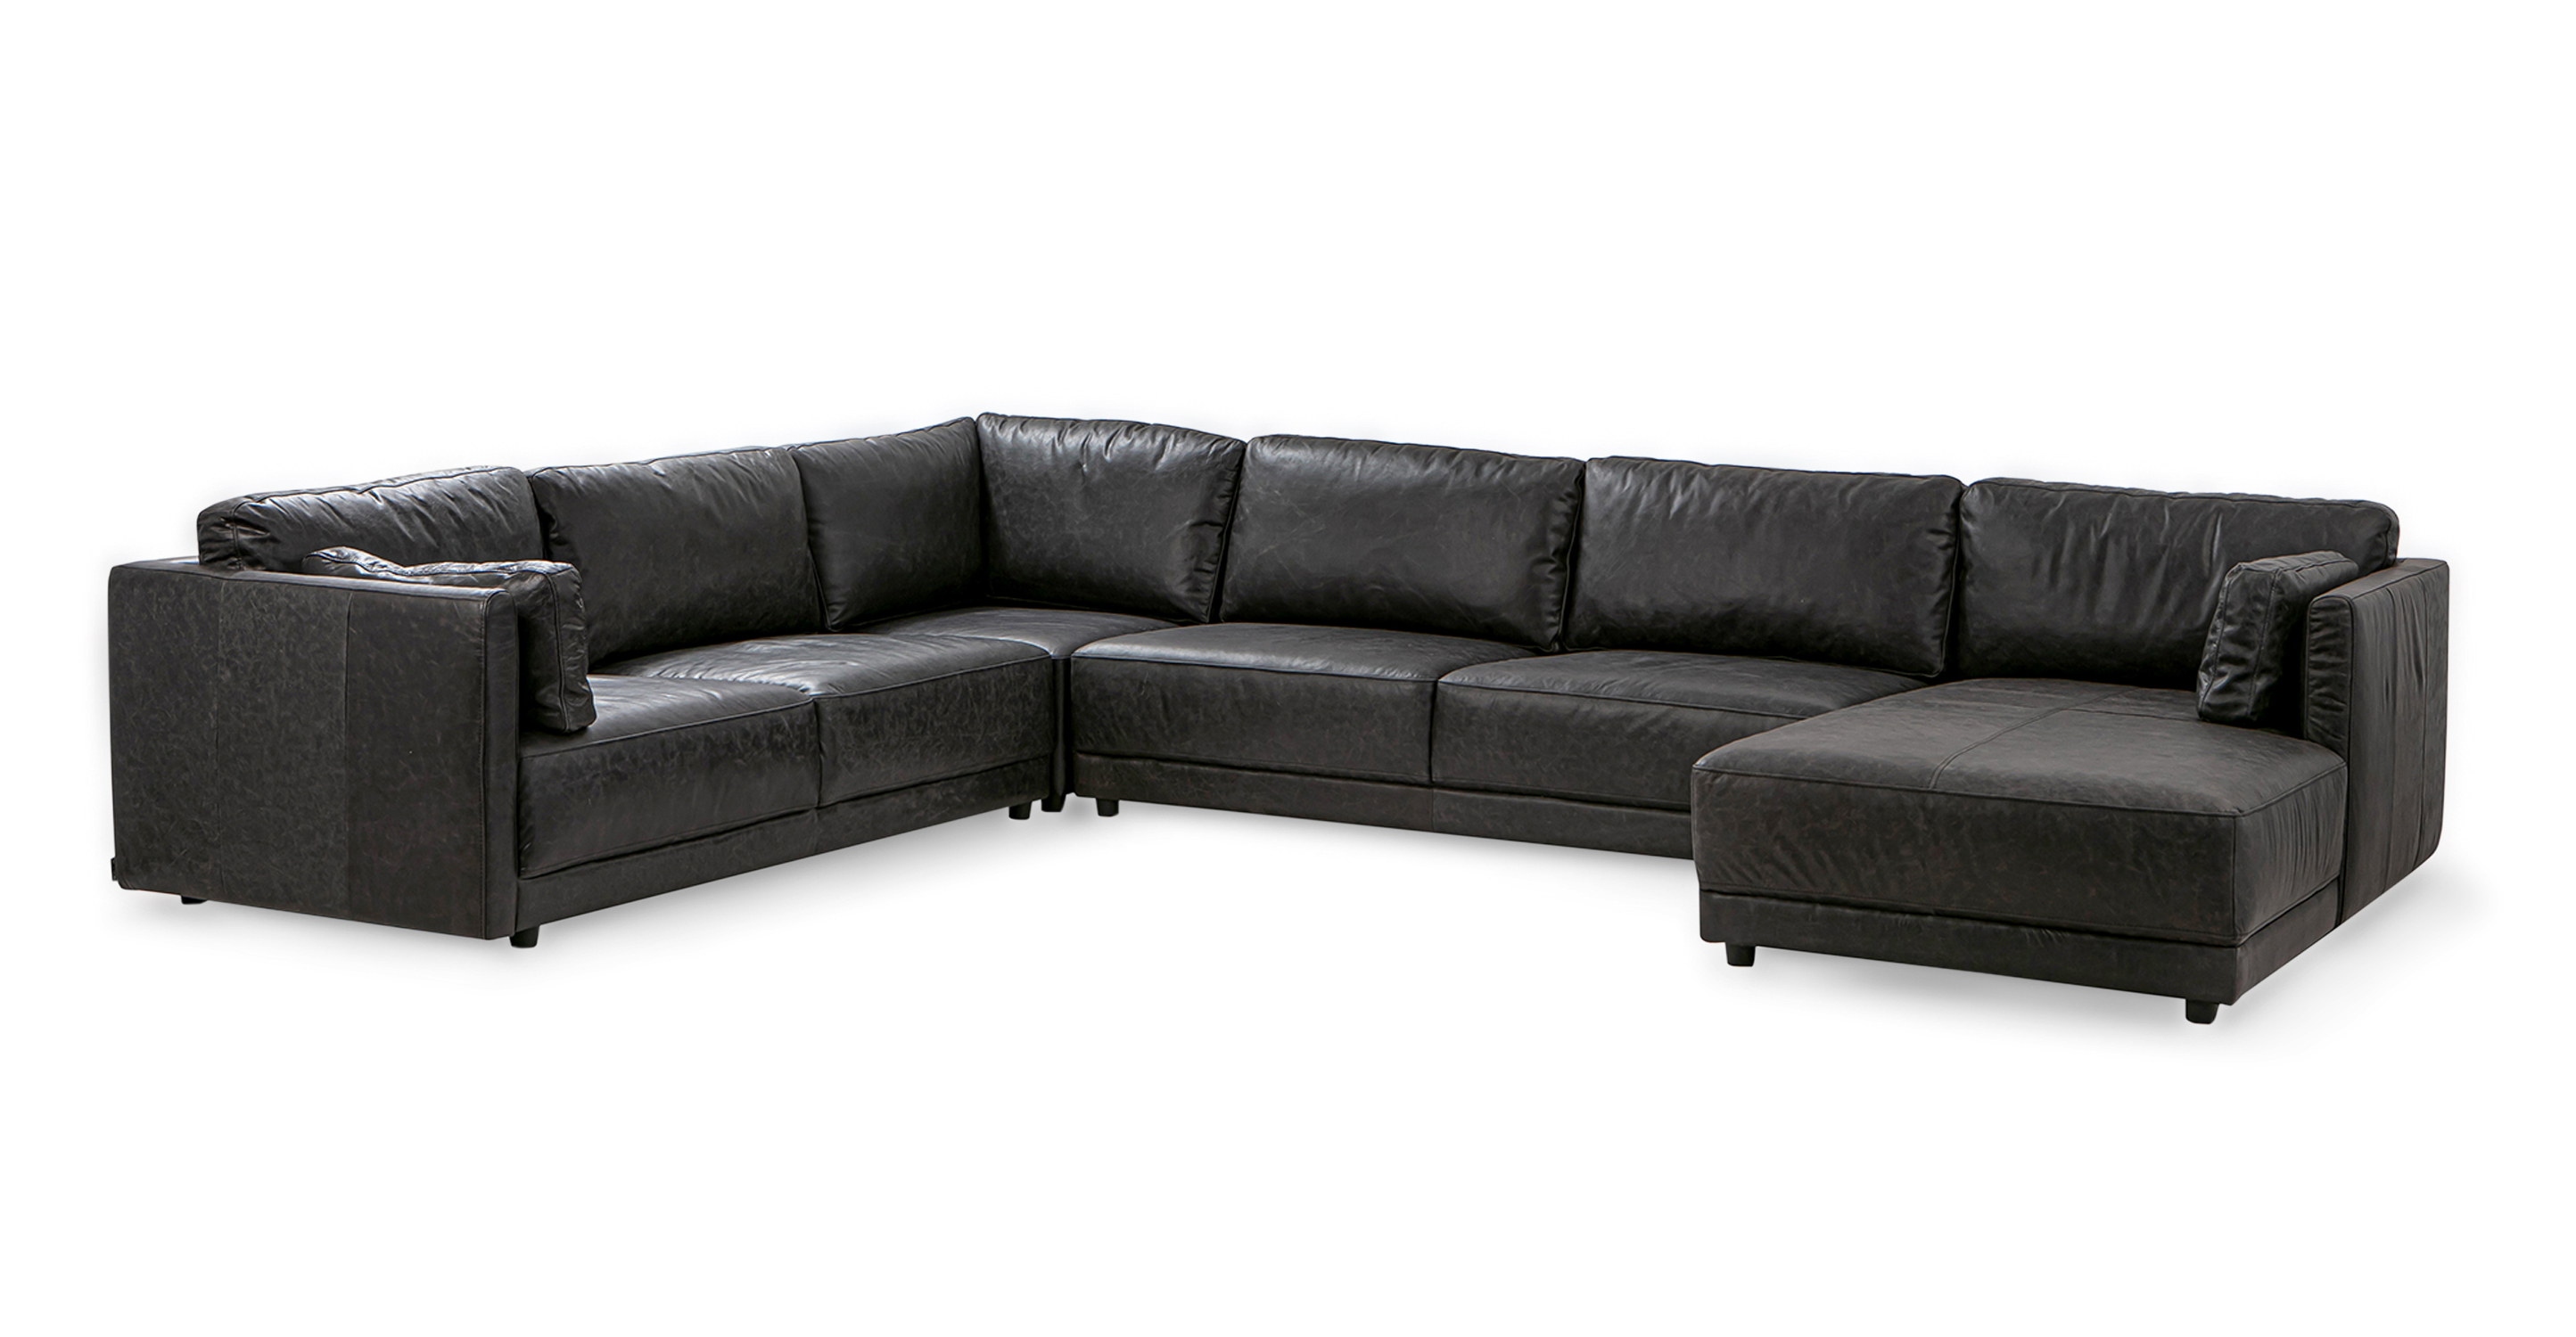 Domus 149" 4-pc 3-Sided Sofa Sectional Right, Ebony